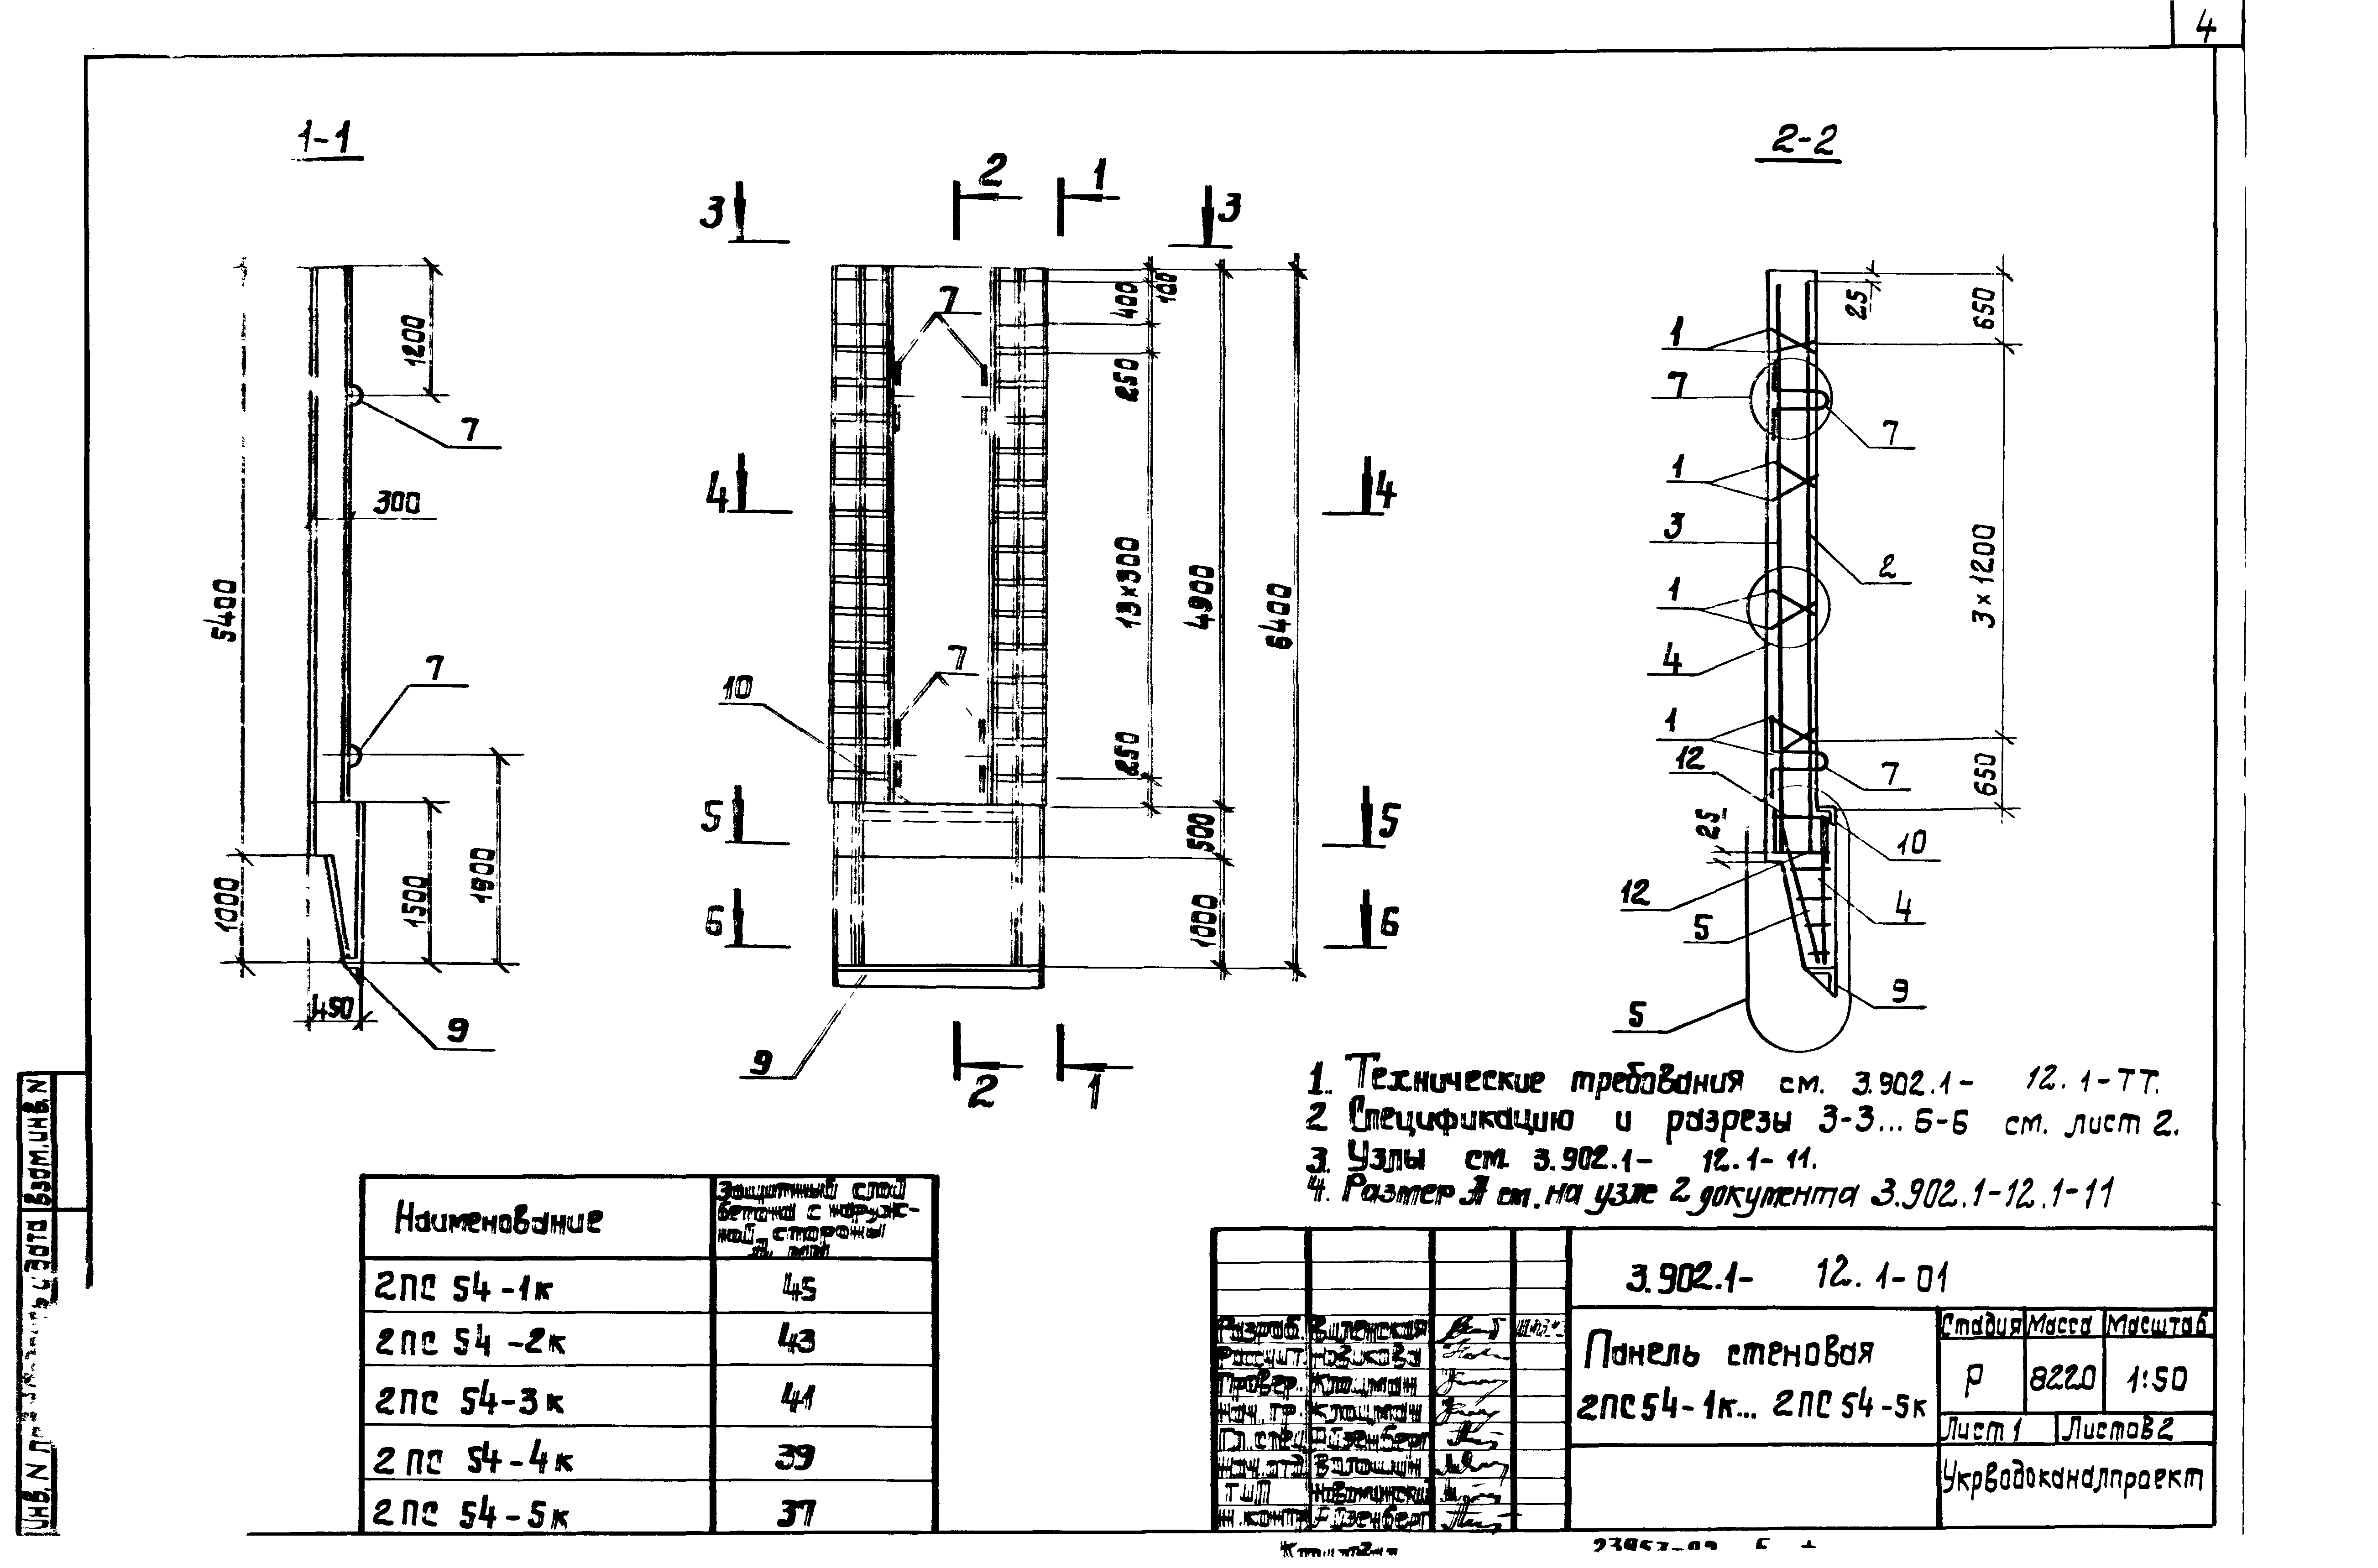 Панель стеновая 2ПС54-5к Серия 3.902.1-12, вып.1